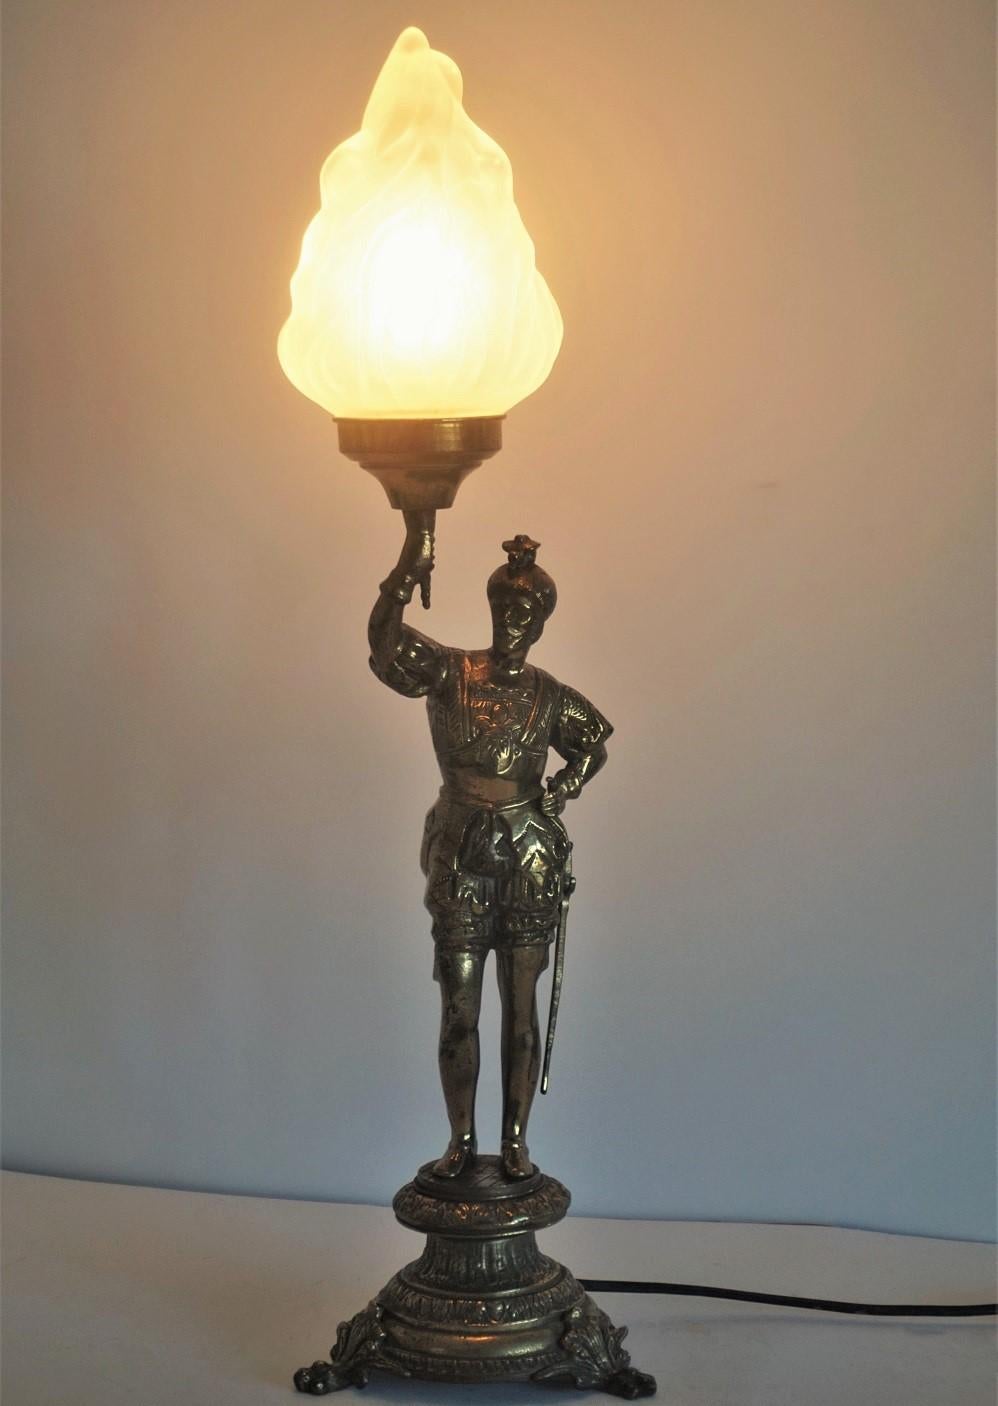 Eine massive Bronze-Paket Messing Ritter Skulptur Kandelaber später umgewandelt, um elektrifizierte Tischlampe mit großen Milchglas Fackel Flamme Schatten.
Es handelt sich um eine Edison E27 Glühbirne.
Gesamthöhe: 60 cm (23,75 Zoll)
Durchmesser: